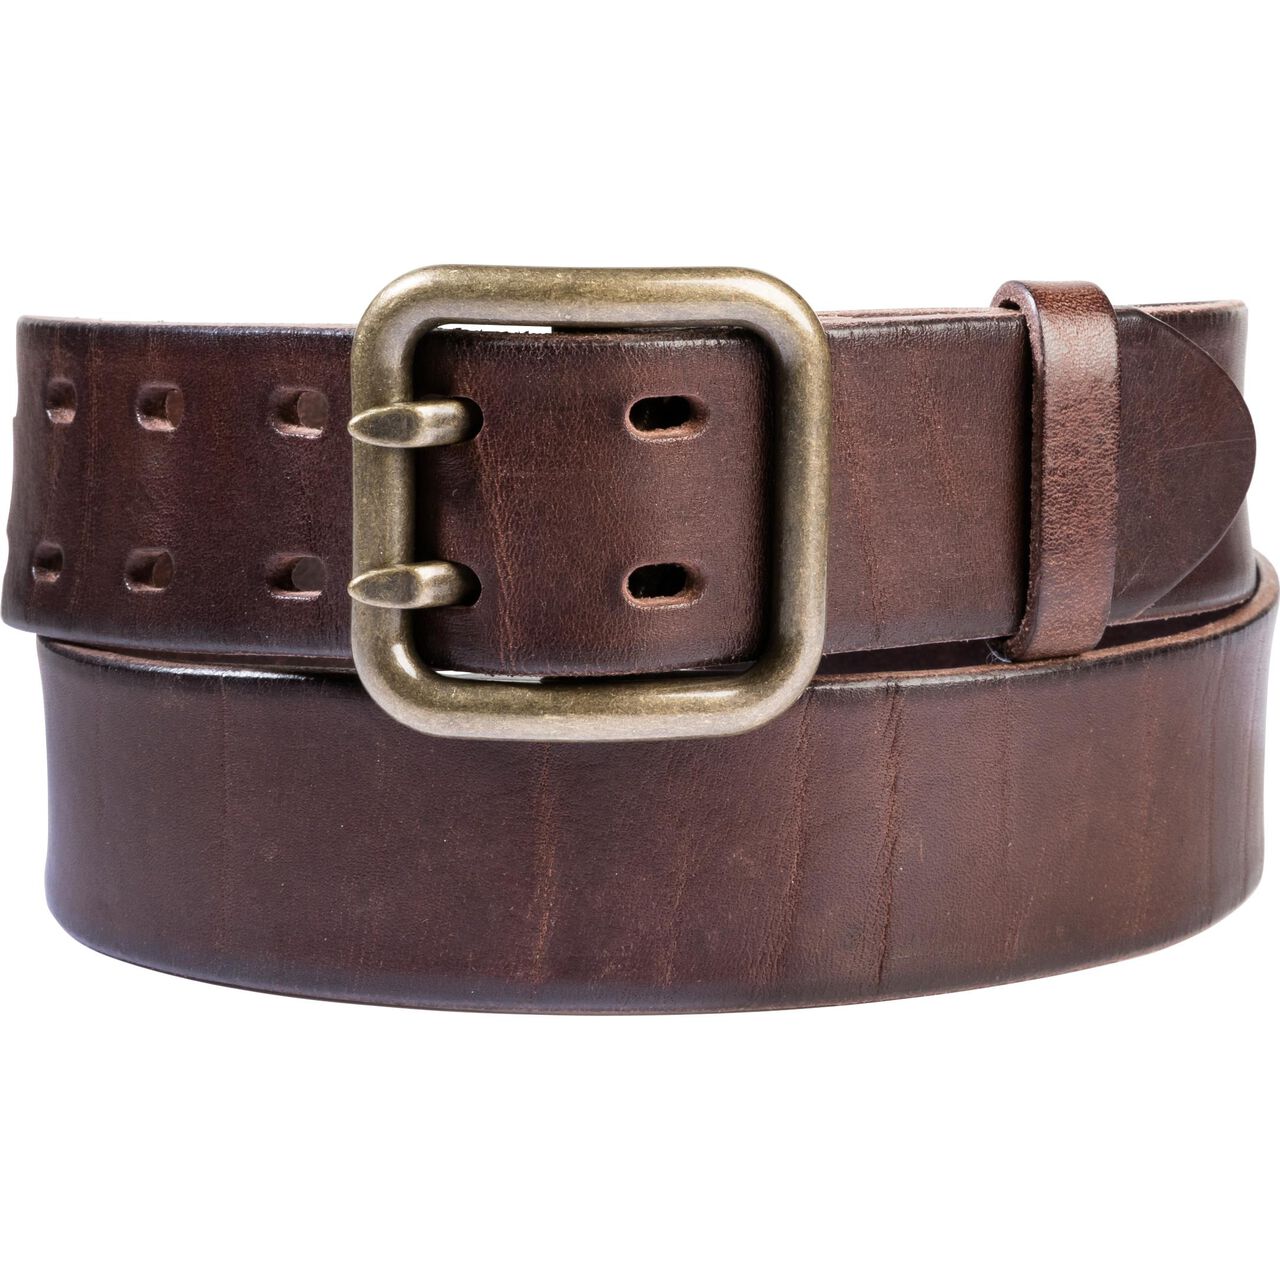 Vintage belt 1.0 brown